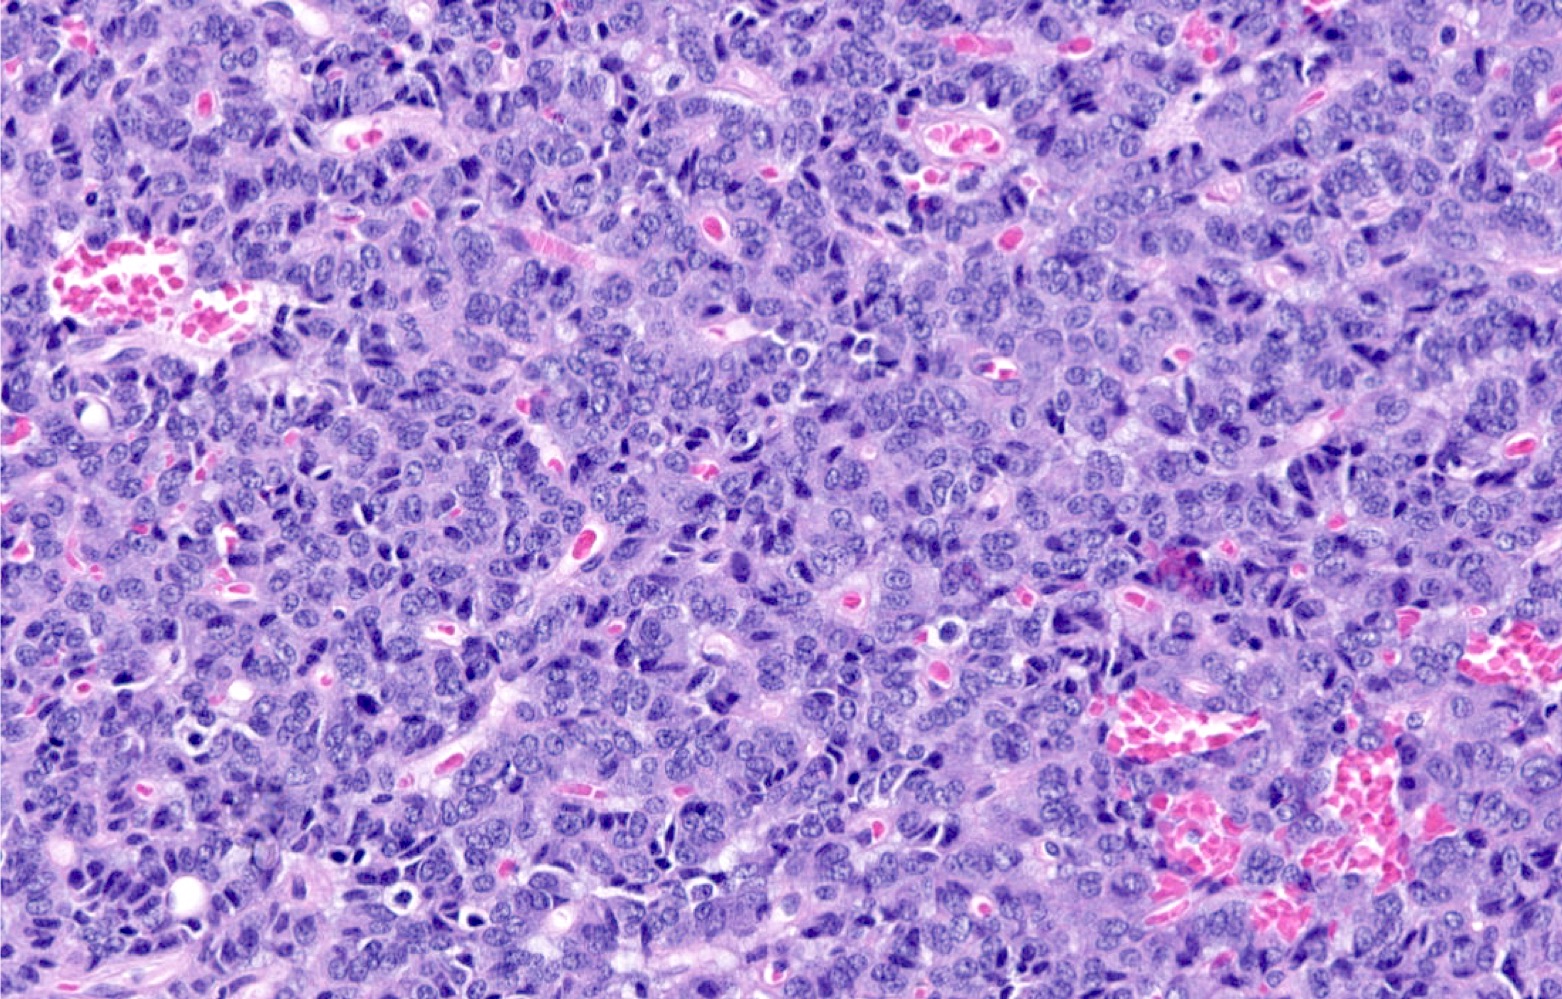 Imunex Complex De Microalge 180cps